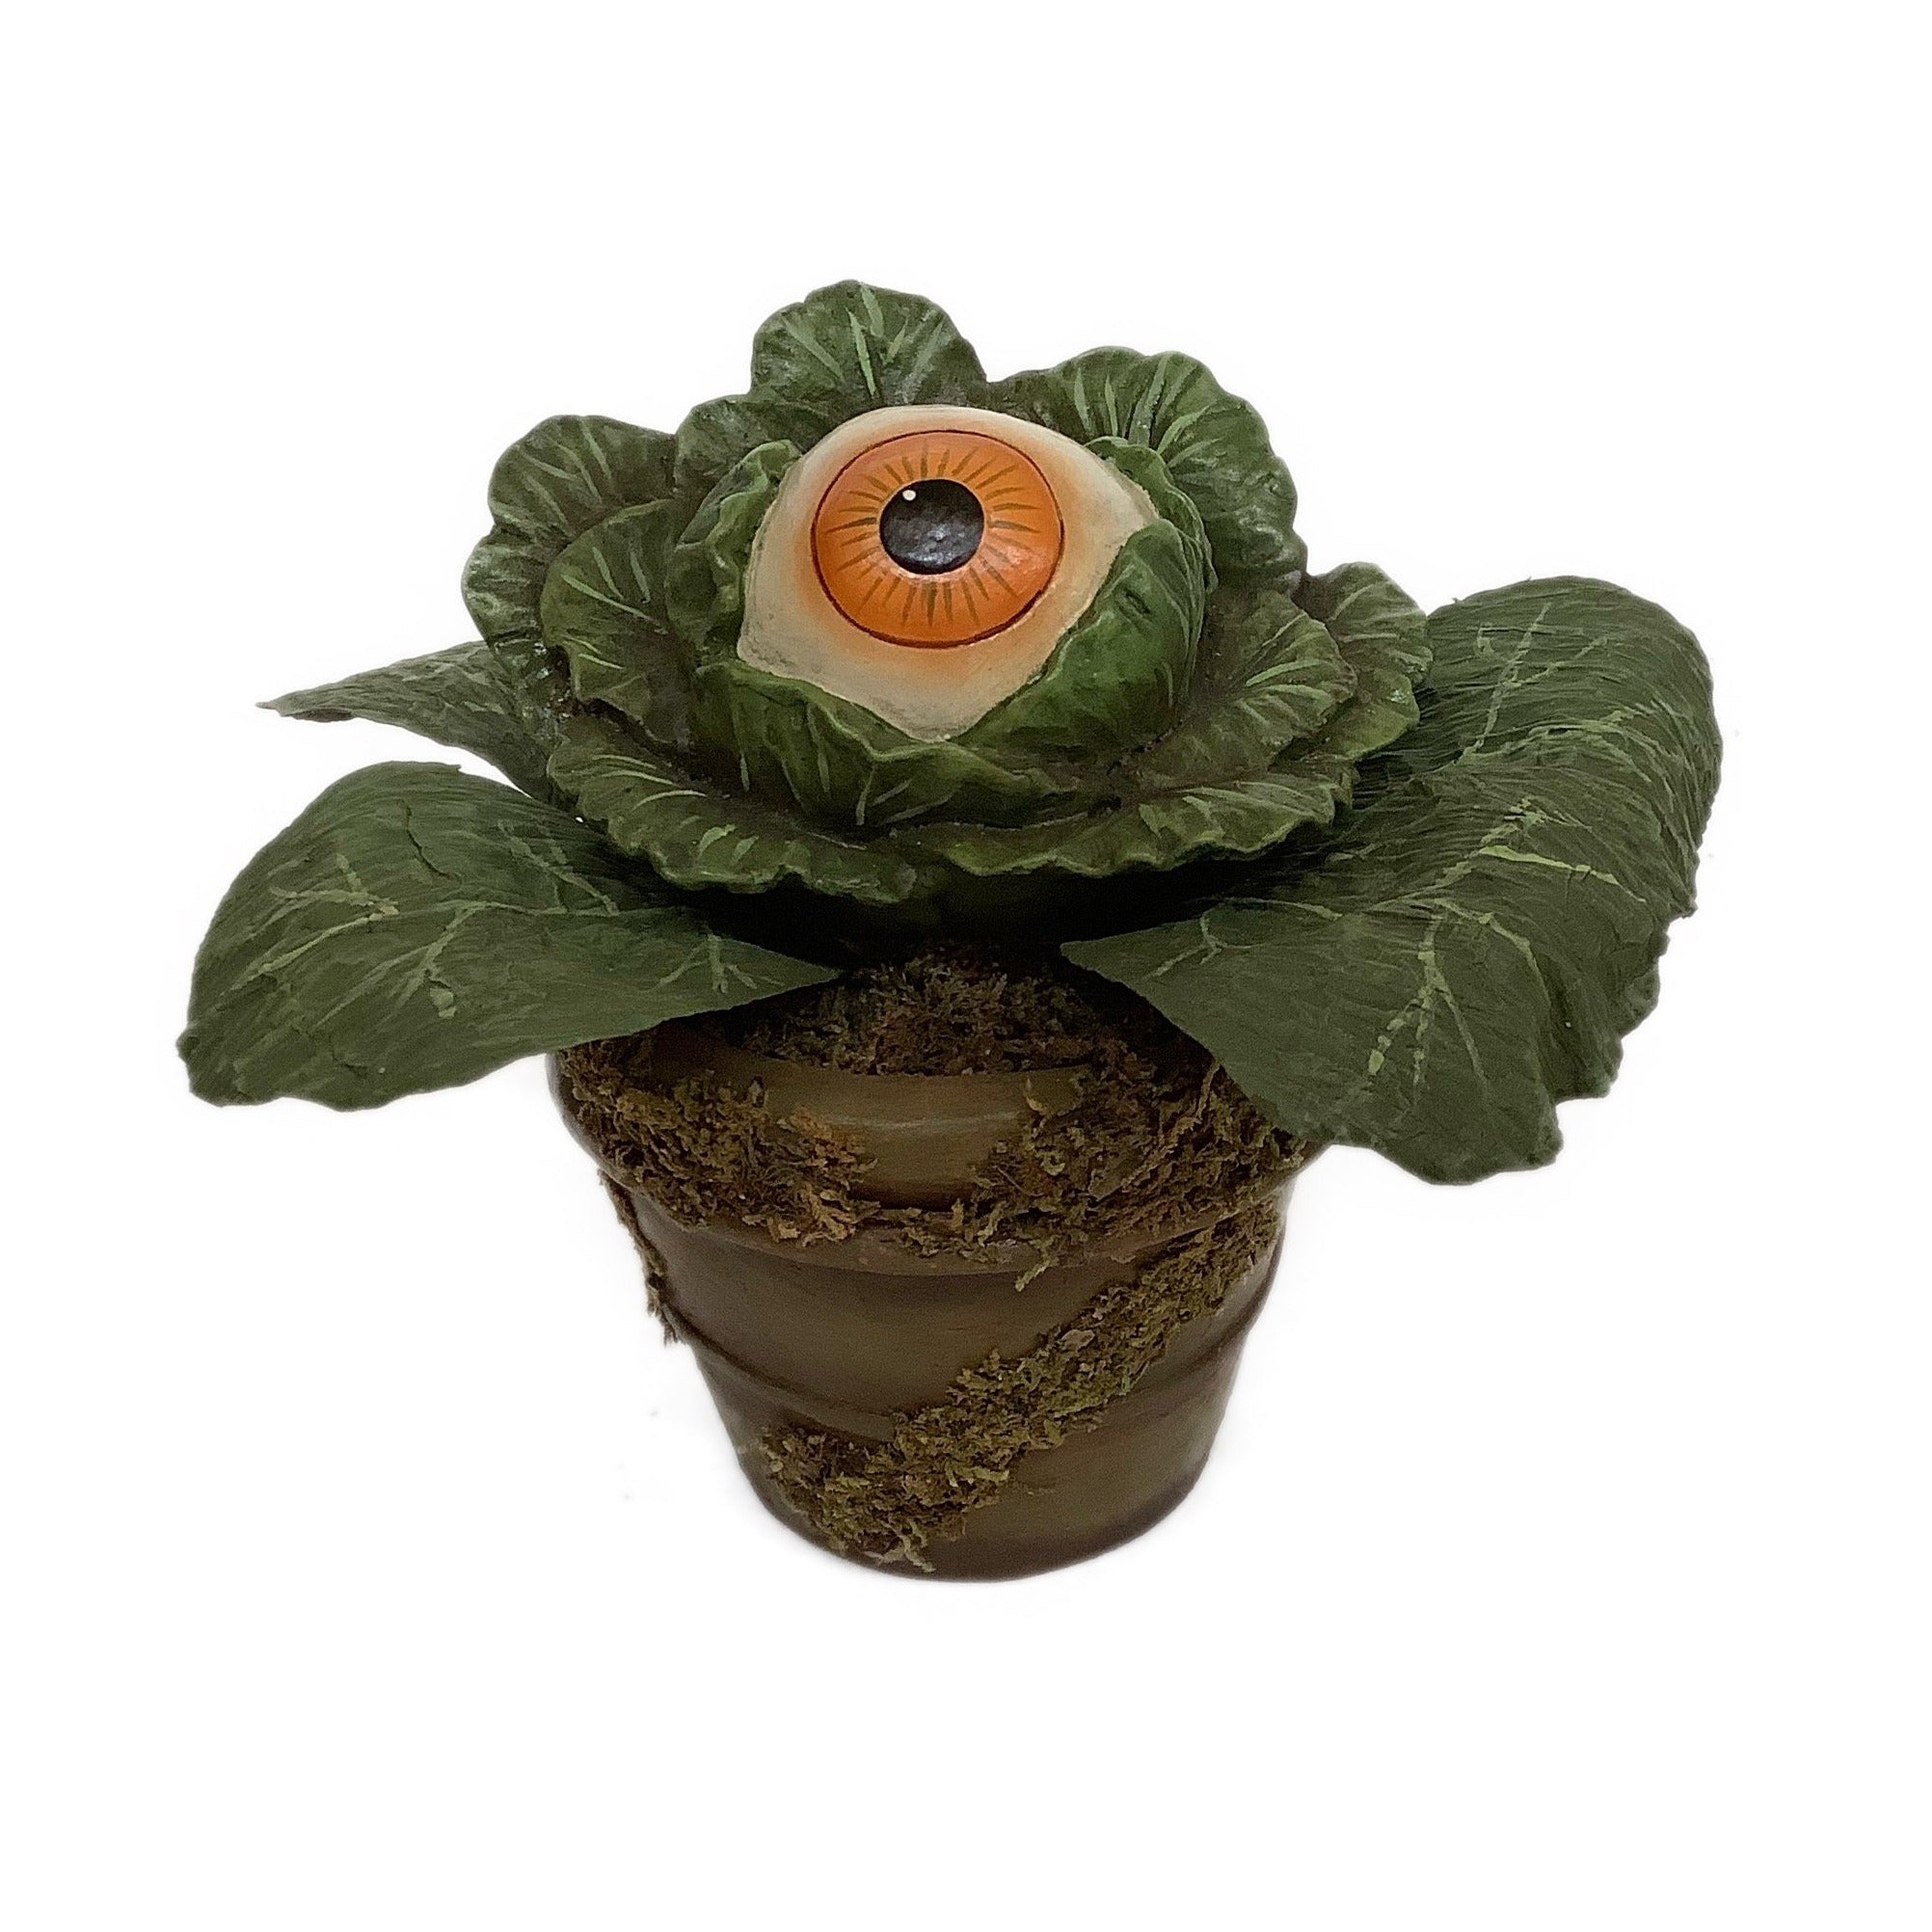 Eerie Eyeball Lettuce